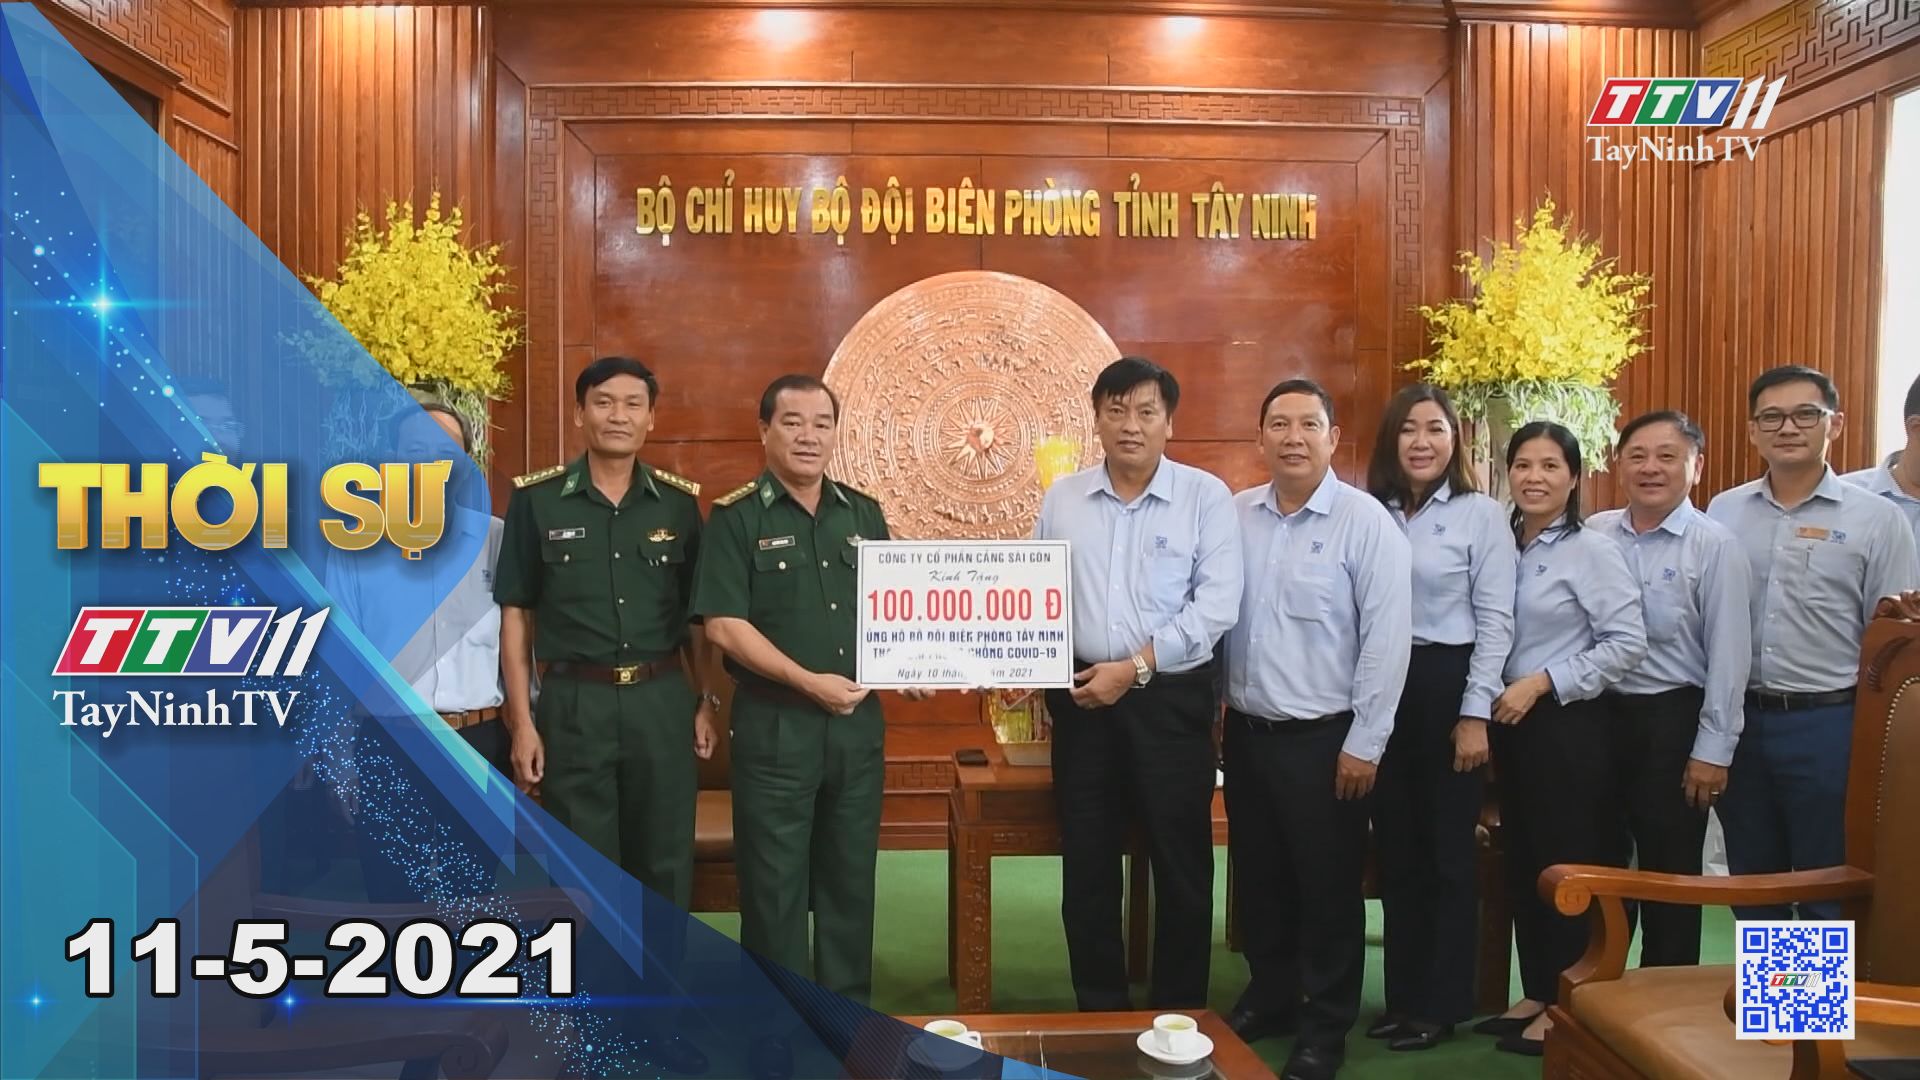 Thời sự Tây Ninh 11-5-2021 | Tin tức hôm nay | TayNinhTV